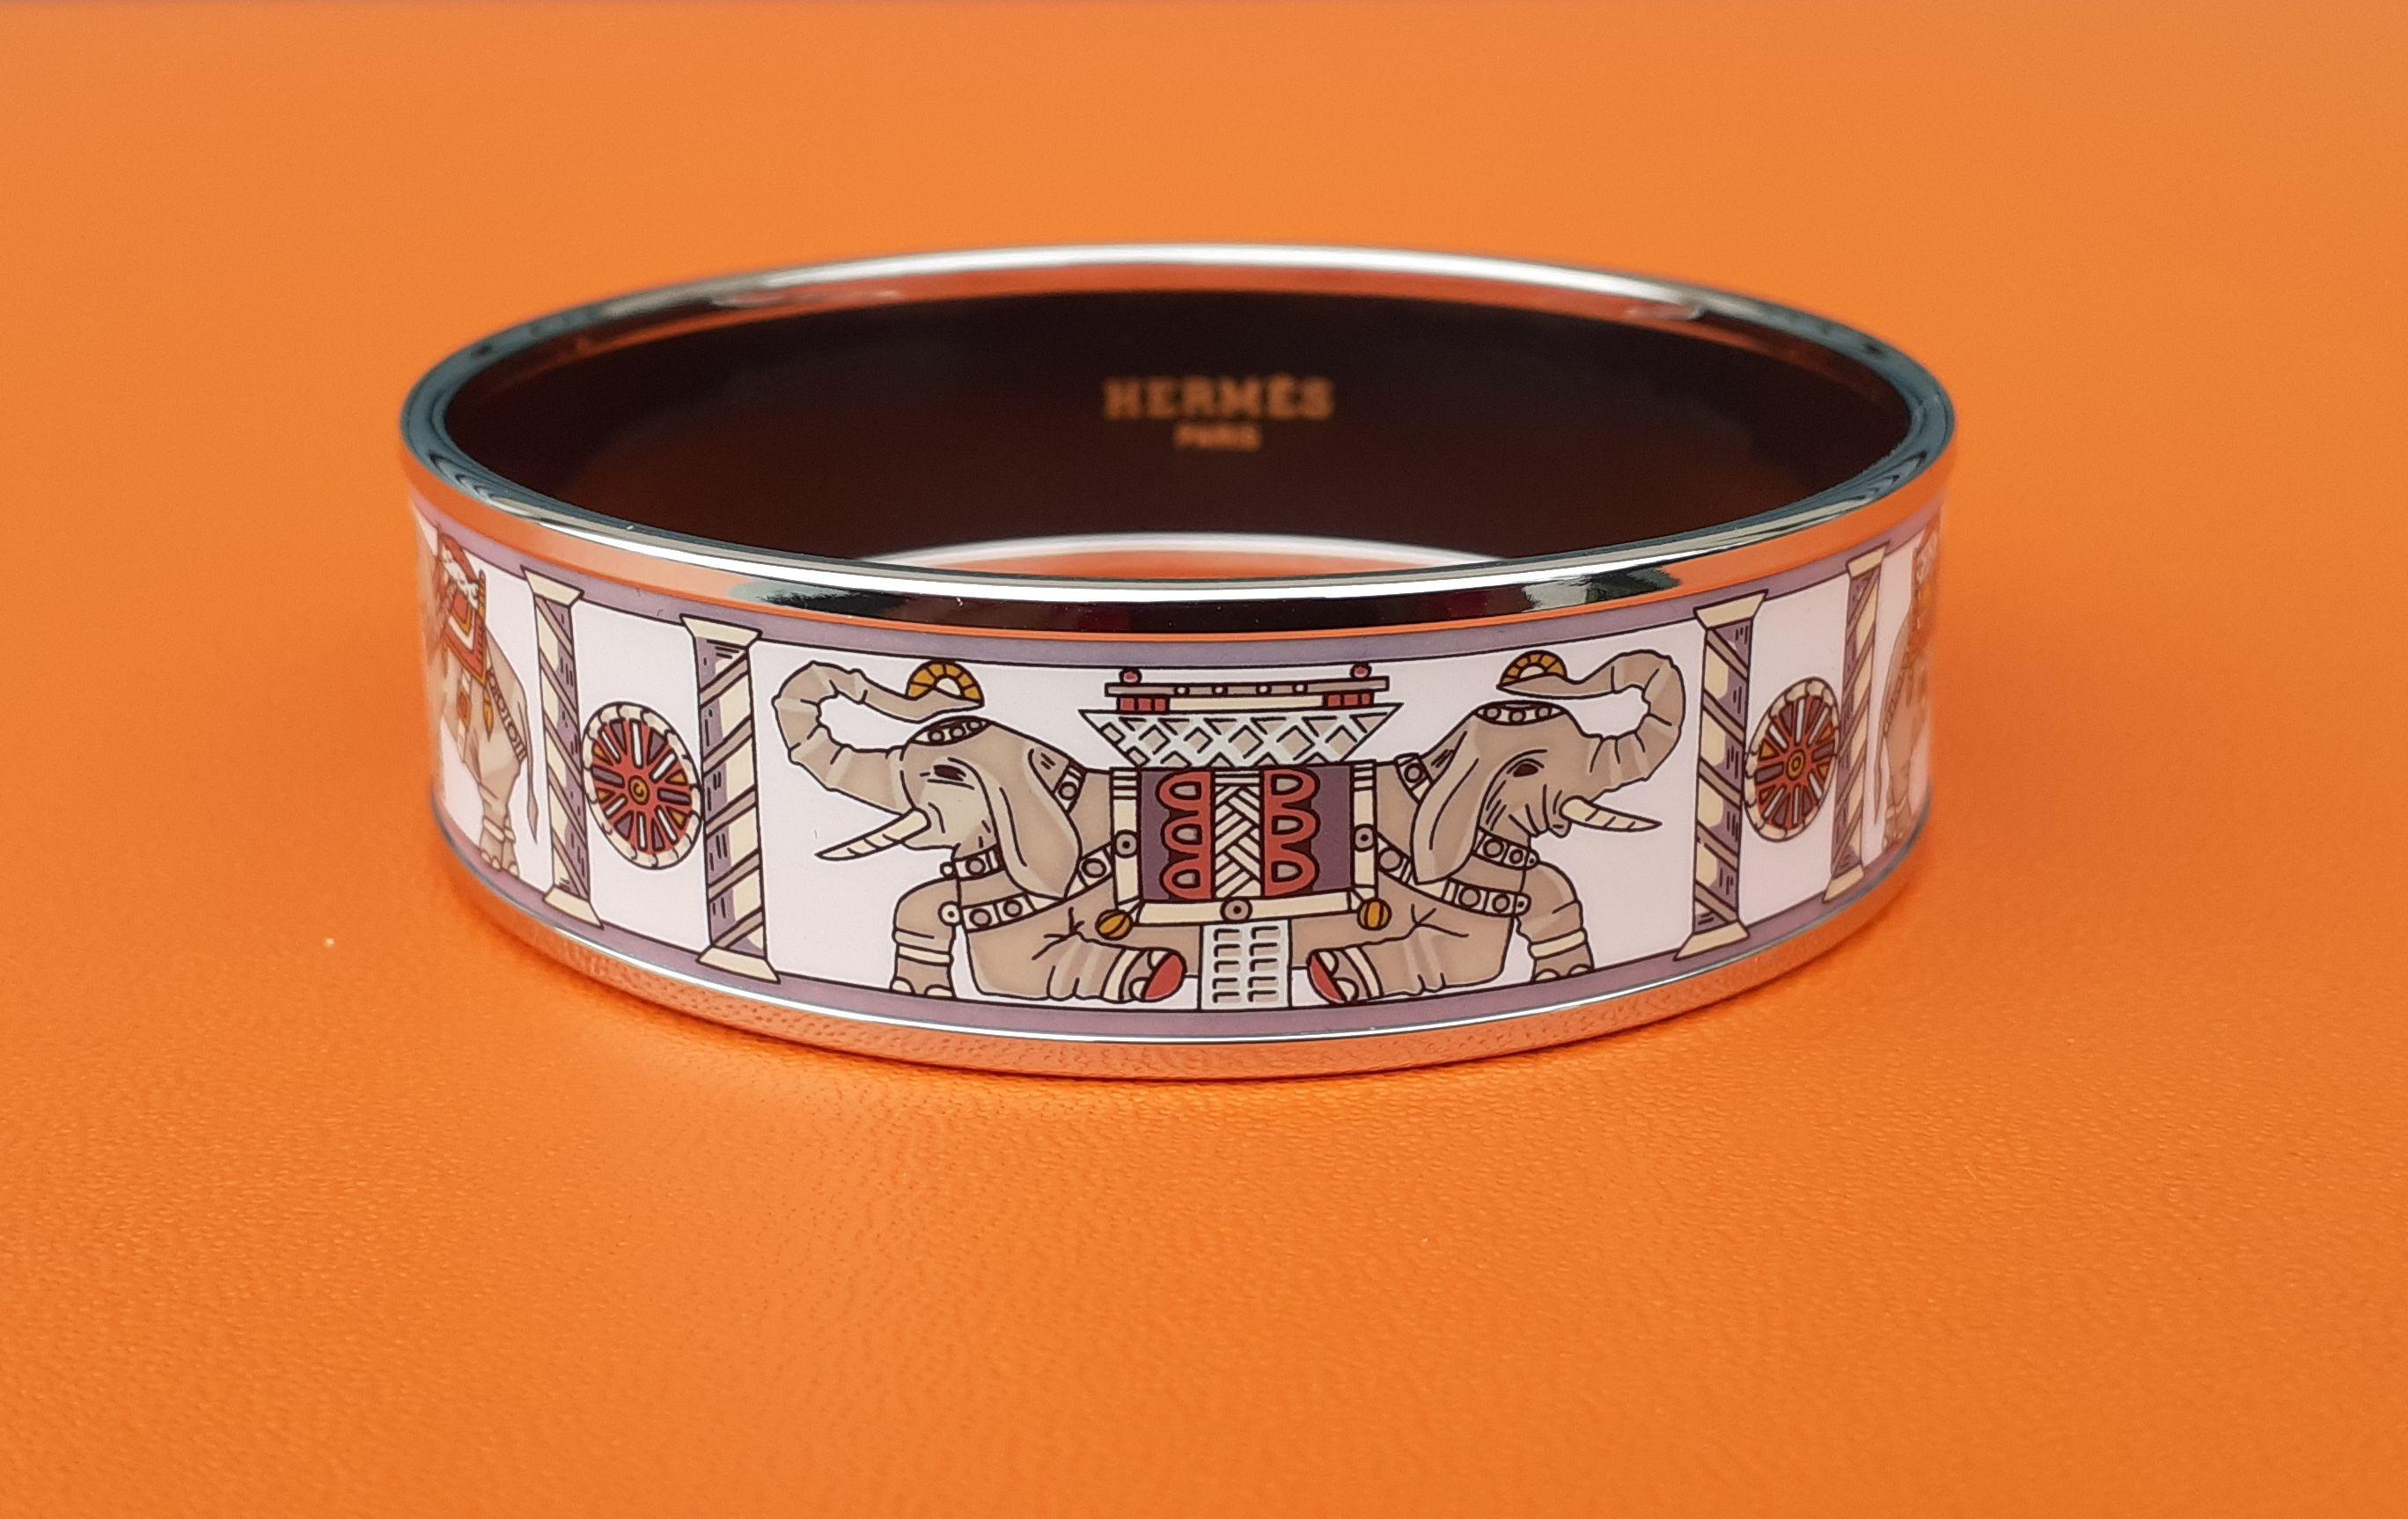 Gorgeous Authentic Hermès Bracelet

Print: 